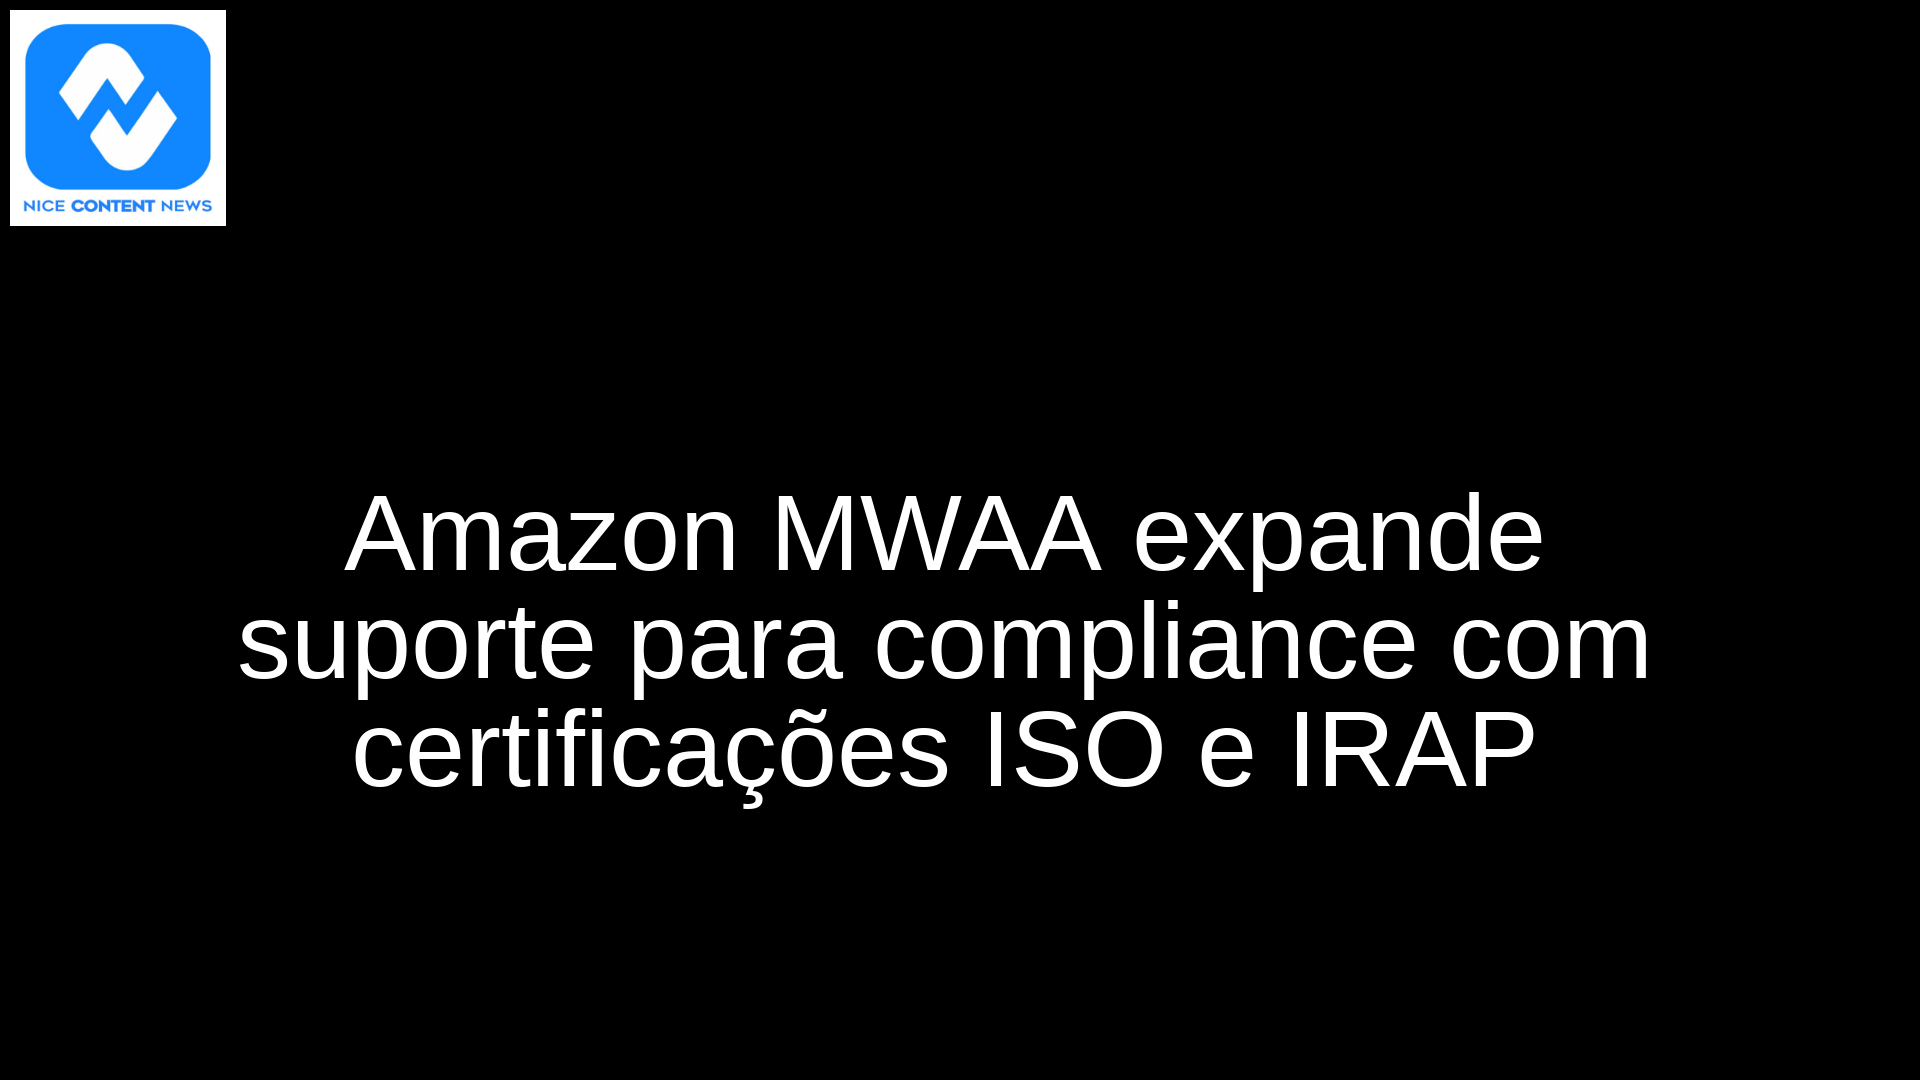 Amazon MWAA expande suporte para compliance com certificações ISO e IRAP